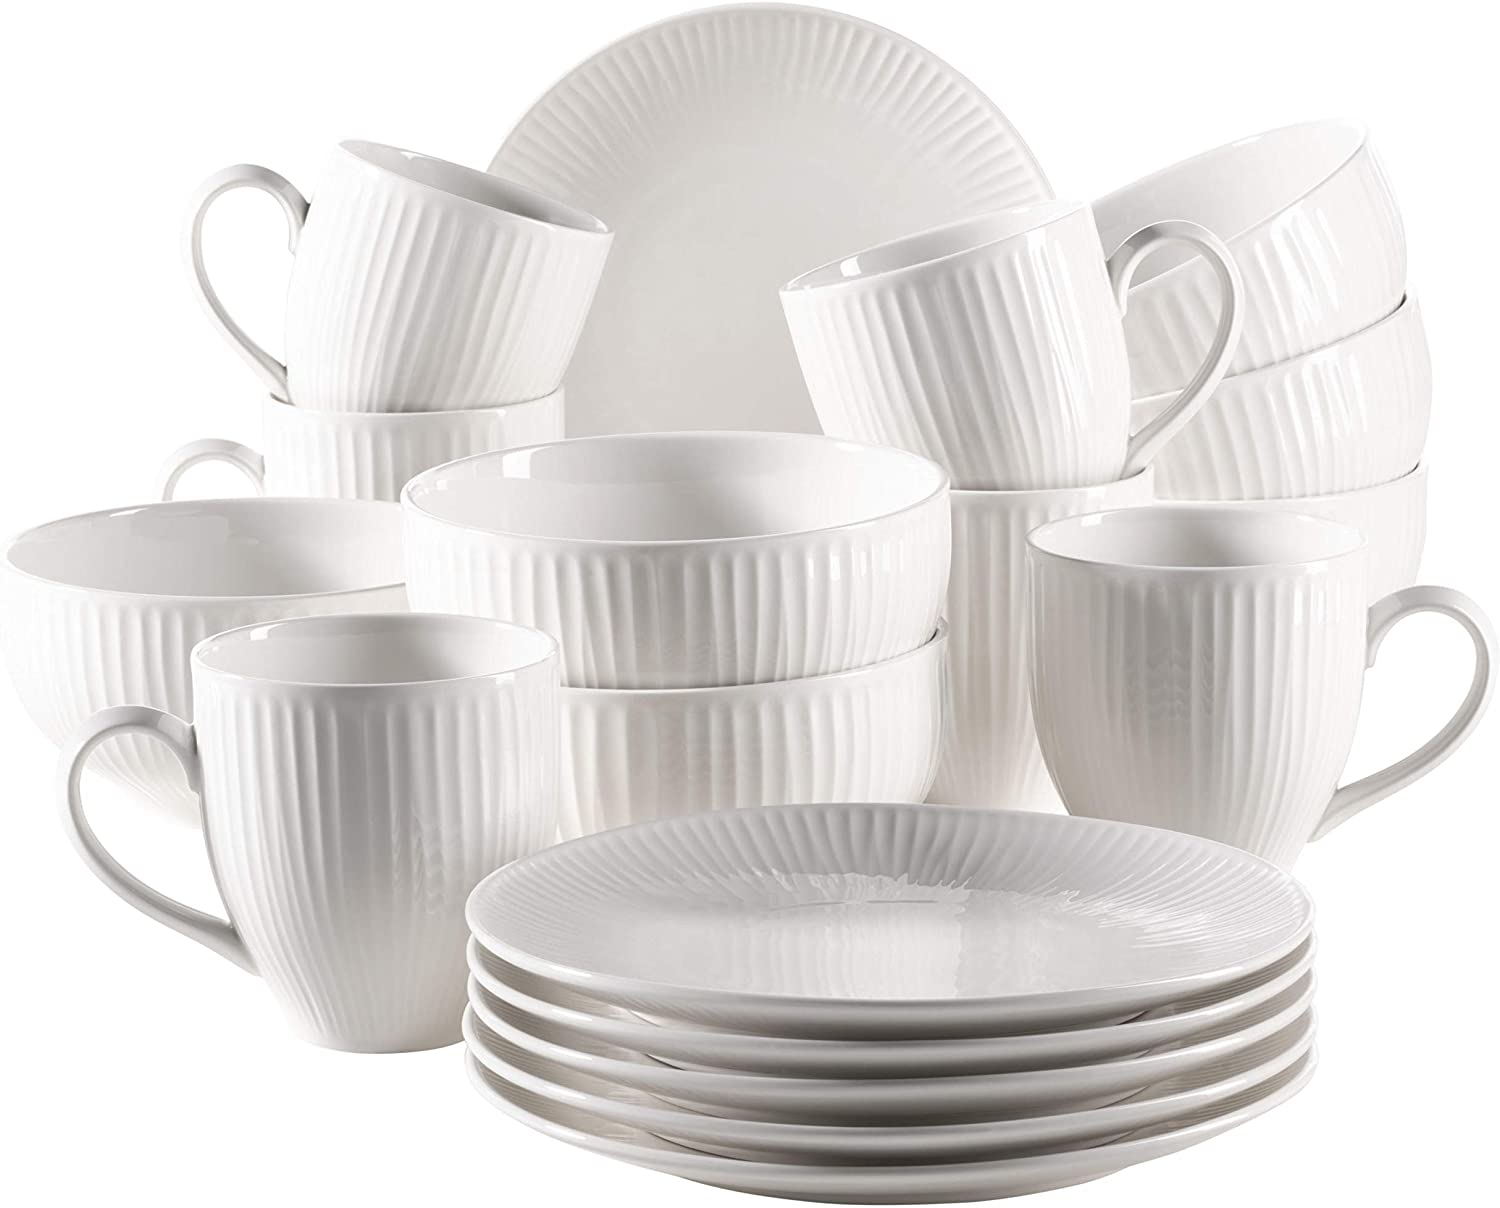 Maser MÄSER 931462 Dalia Breakfast Set for 6 People Made of Hotel Porcelain, 18-Piece Crockery Set in Timeless Vintage Design, White, Durable Porcelain